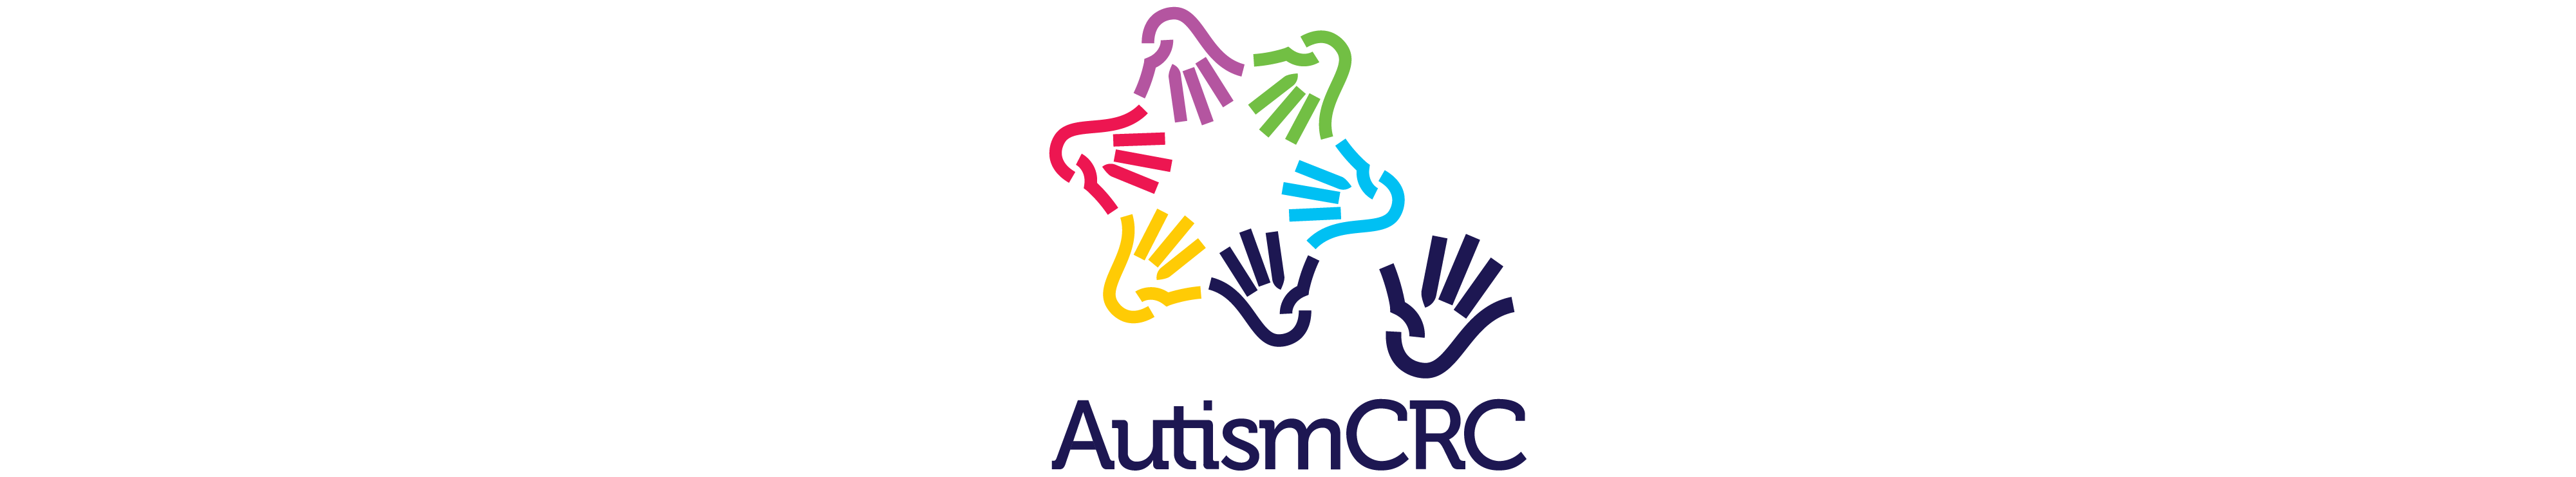 AutismCRC logo